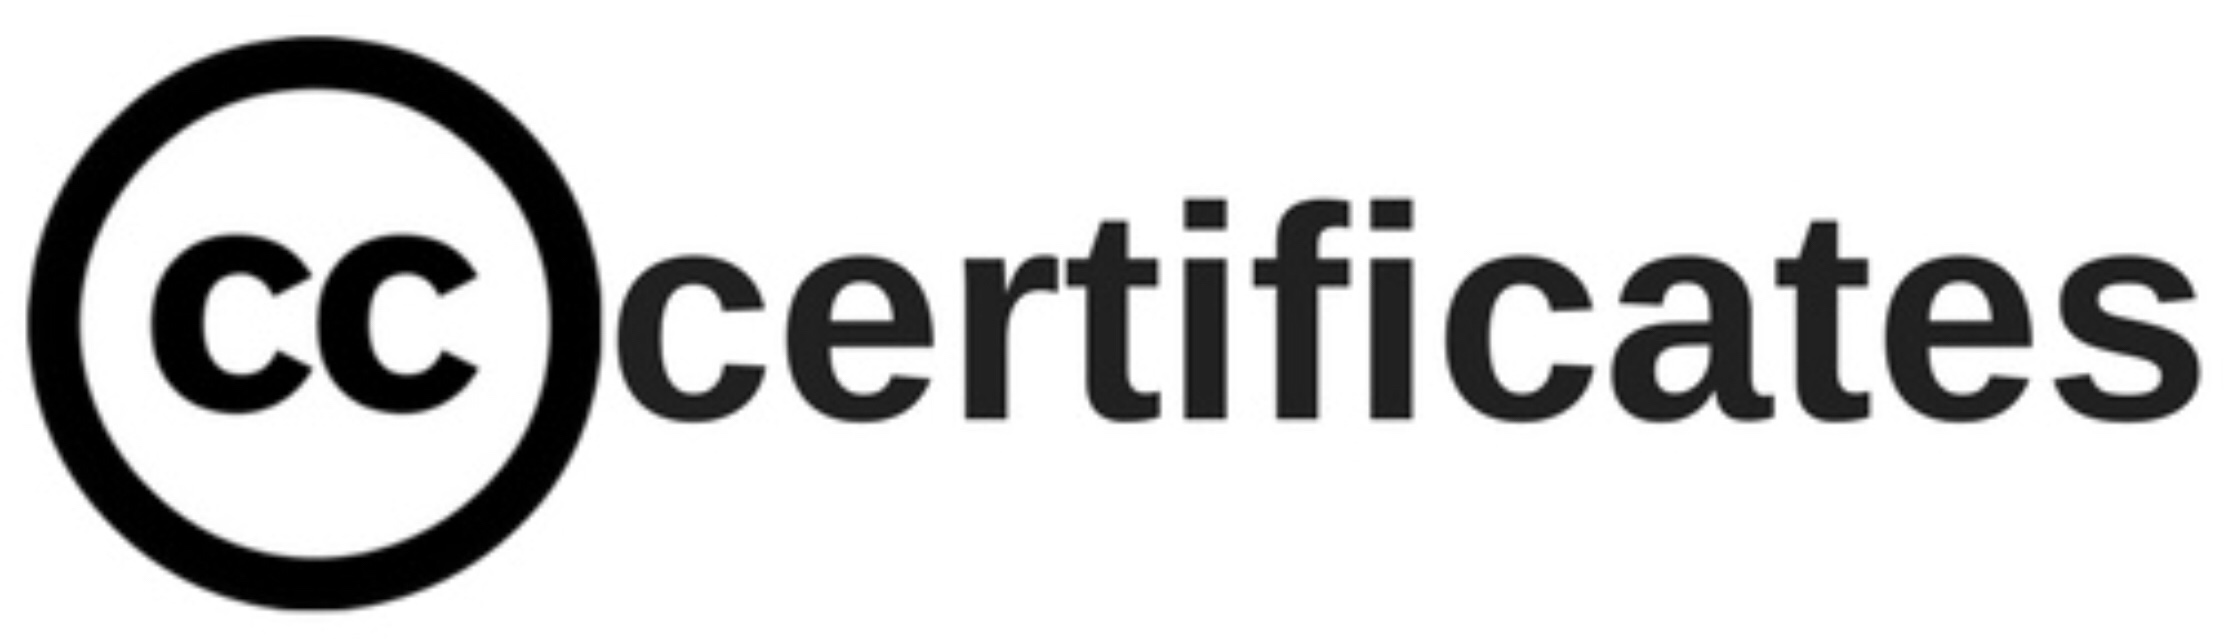 Certificates-wordmark